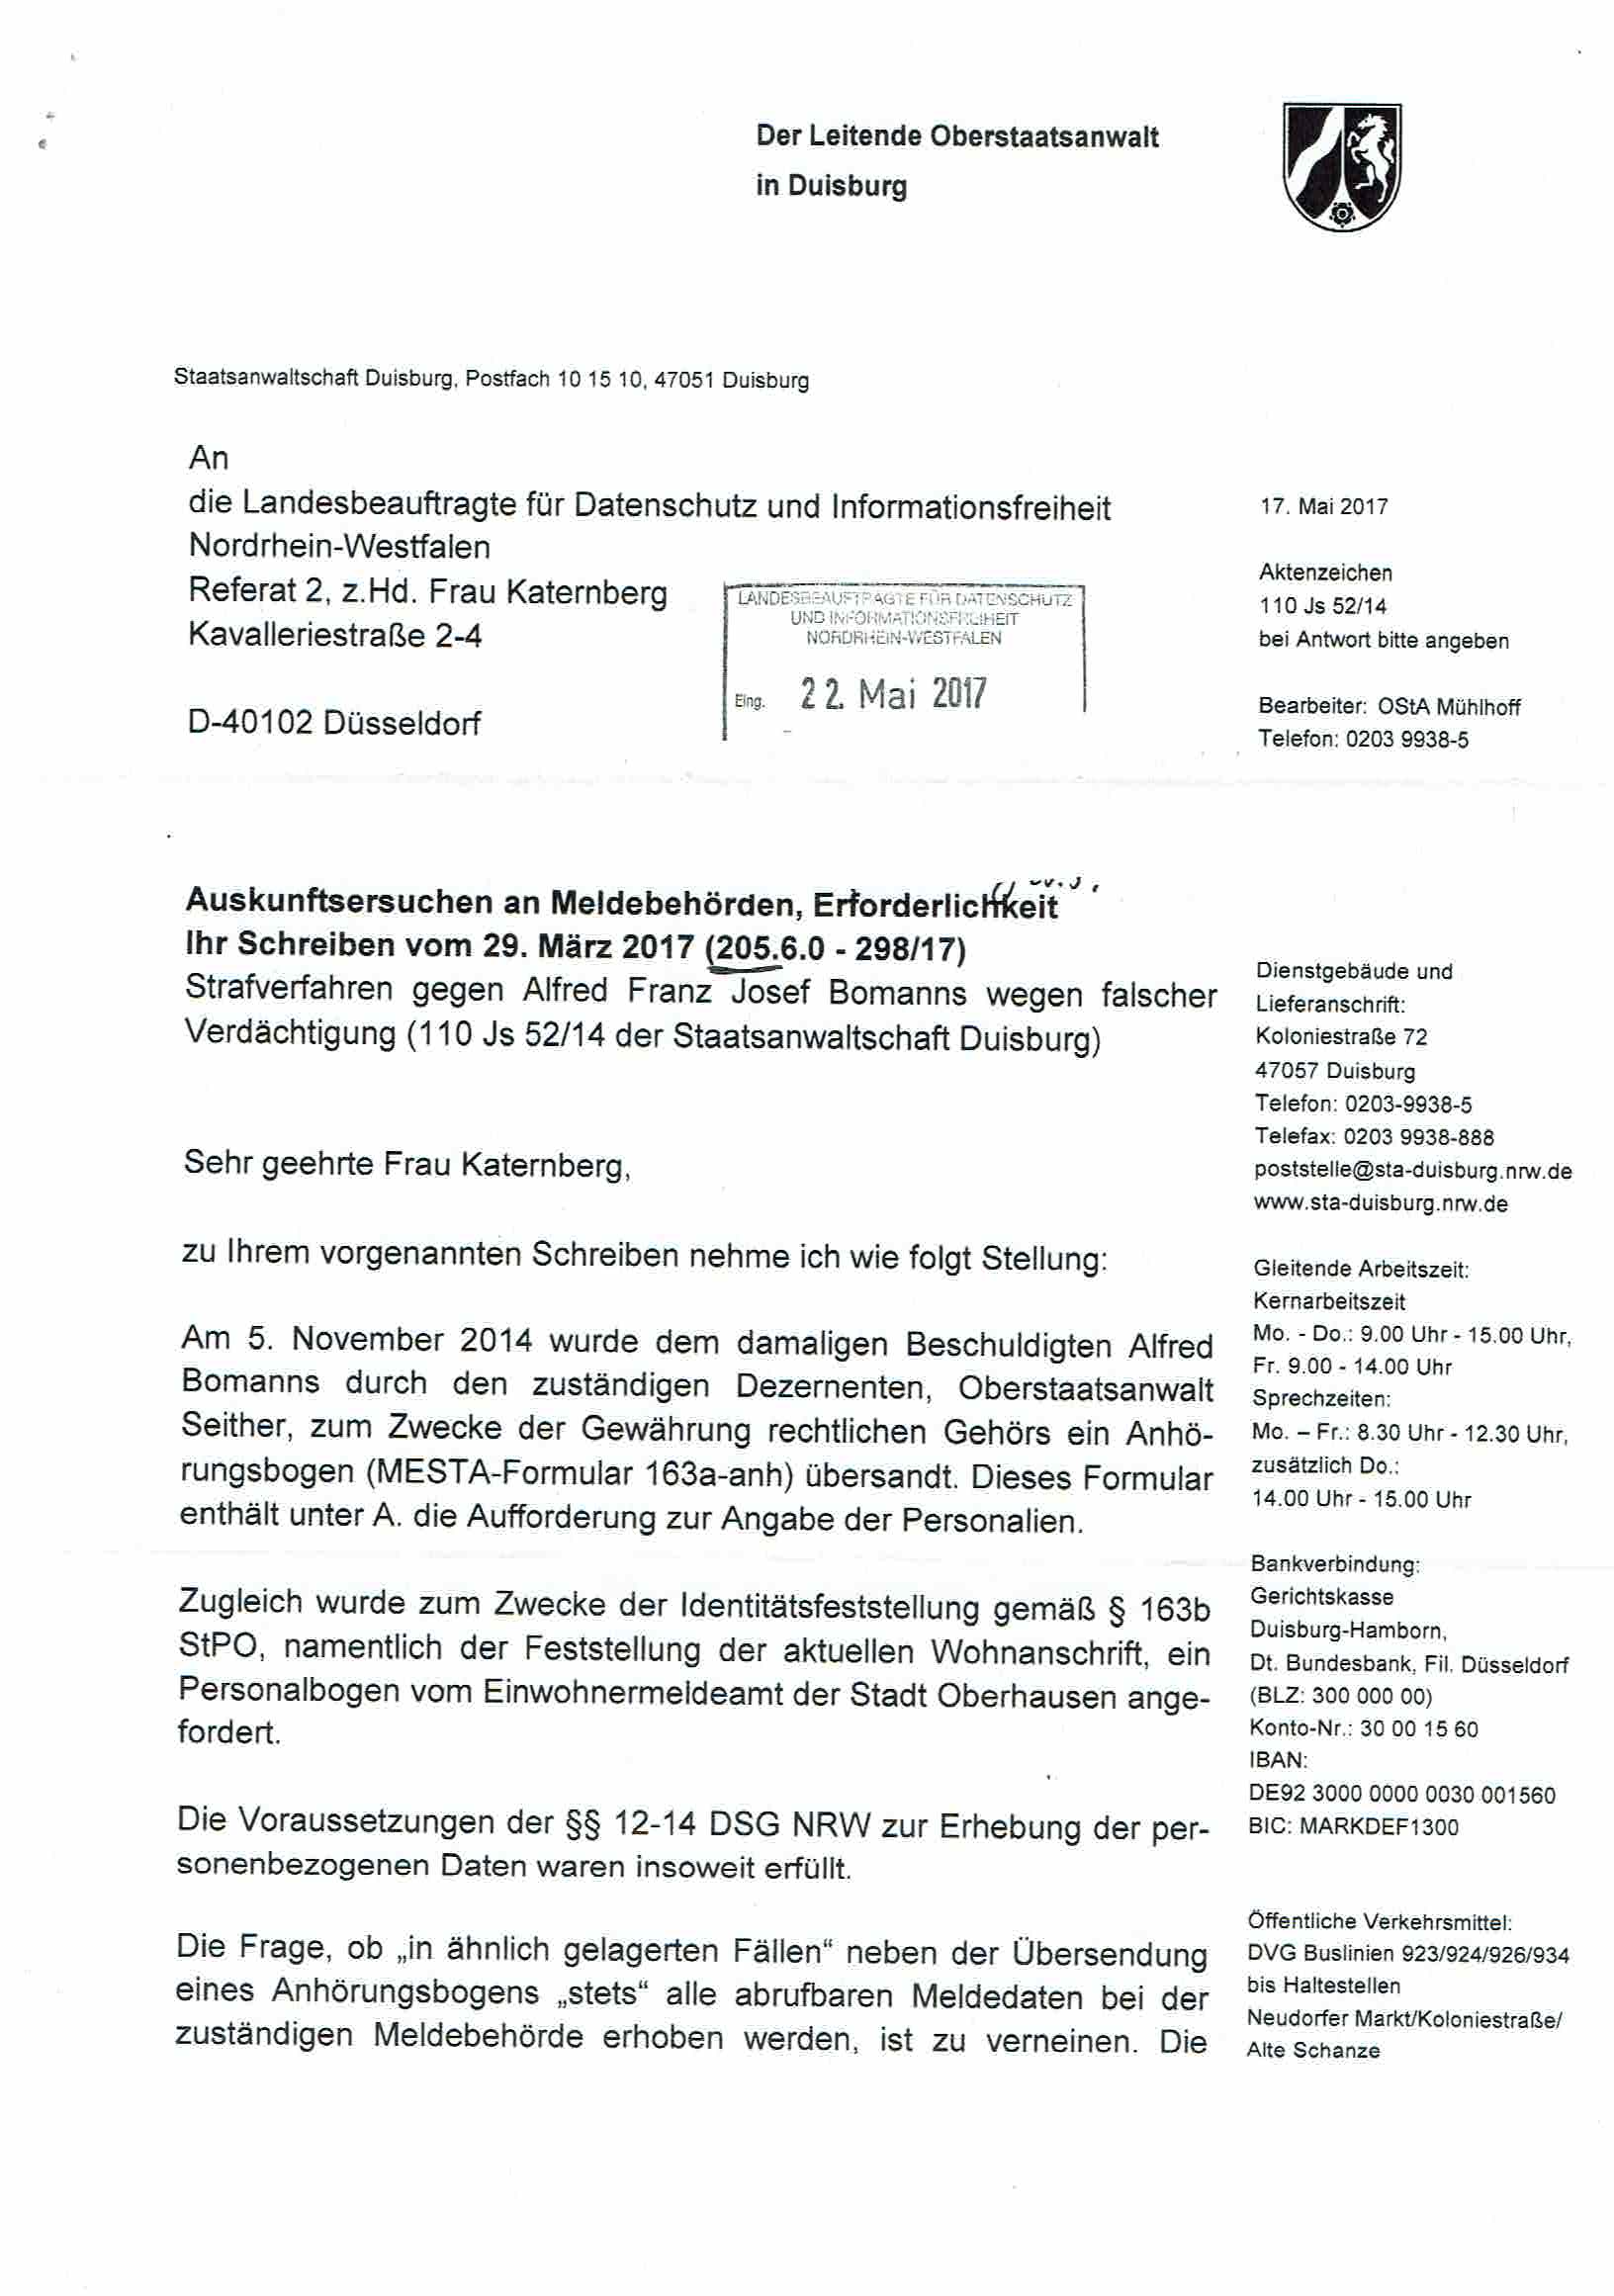 Nachricht der Landesbeauftragen für Datenschutz und Informationsfreiheit Nordrhein-Westfalen vom 30.05.2017, Anlage S. 1